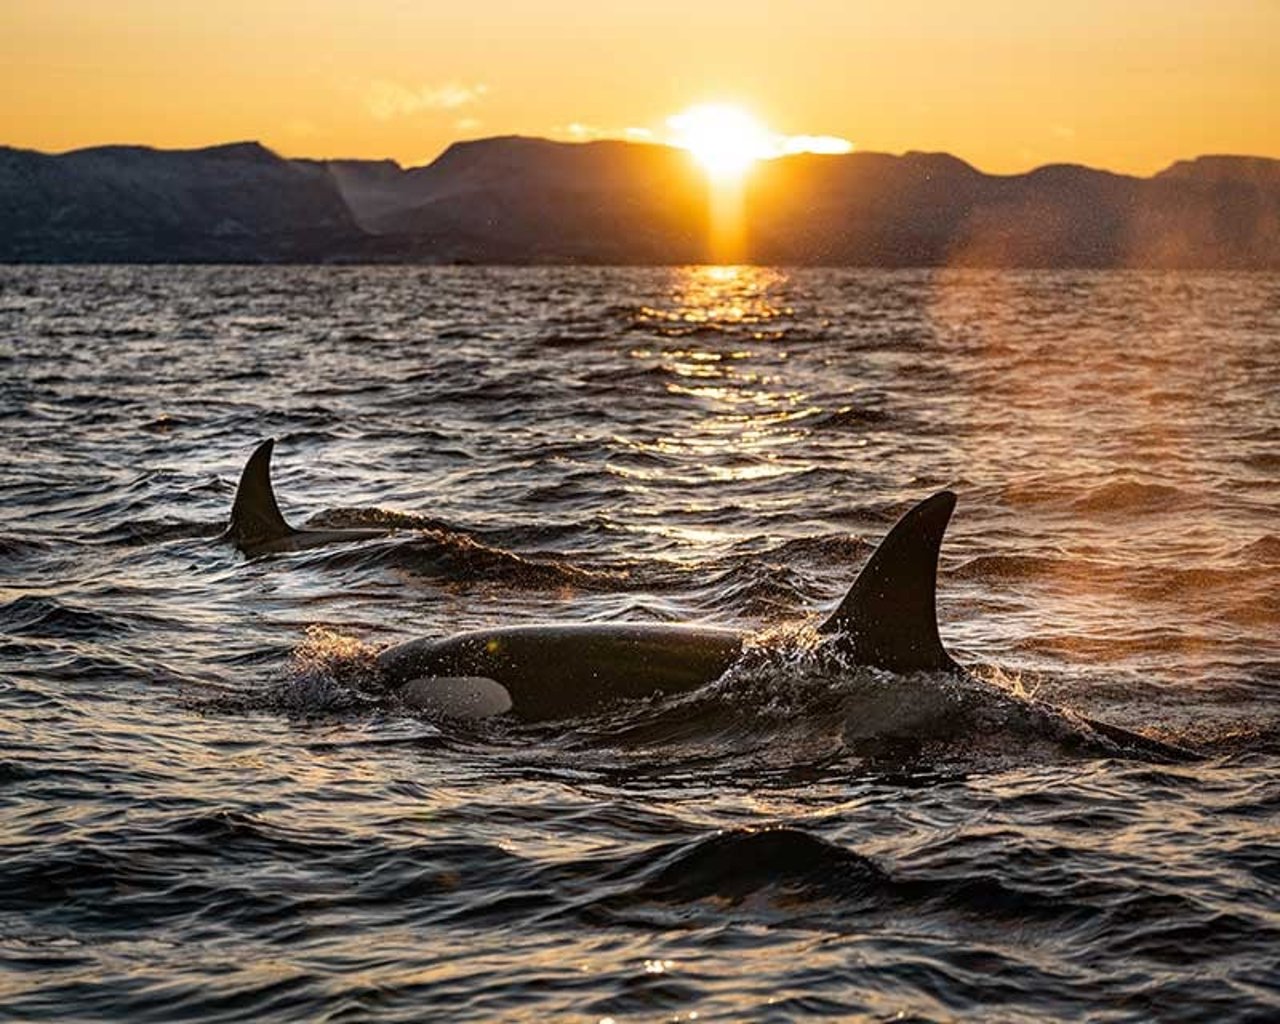 Orcas at sea